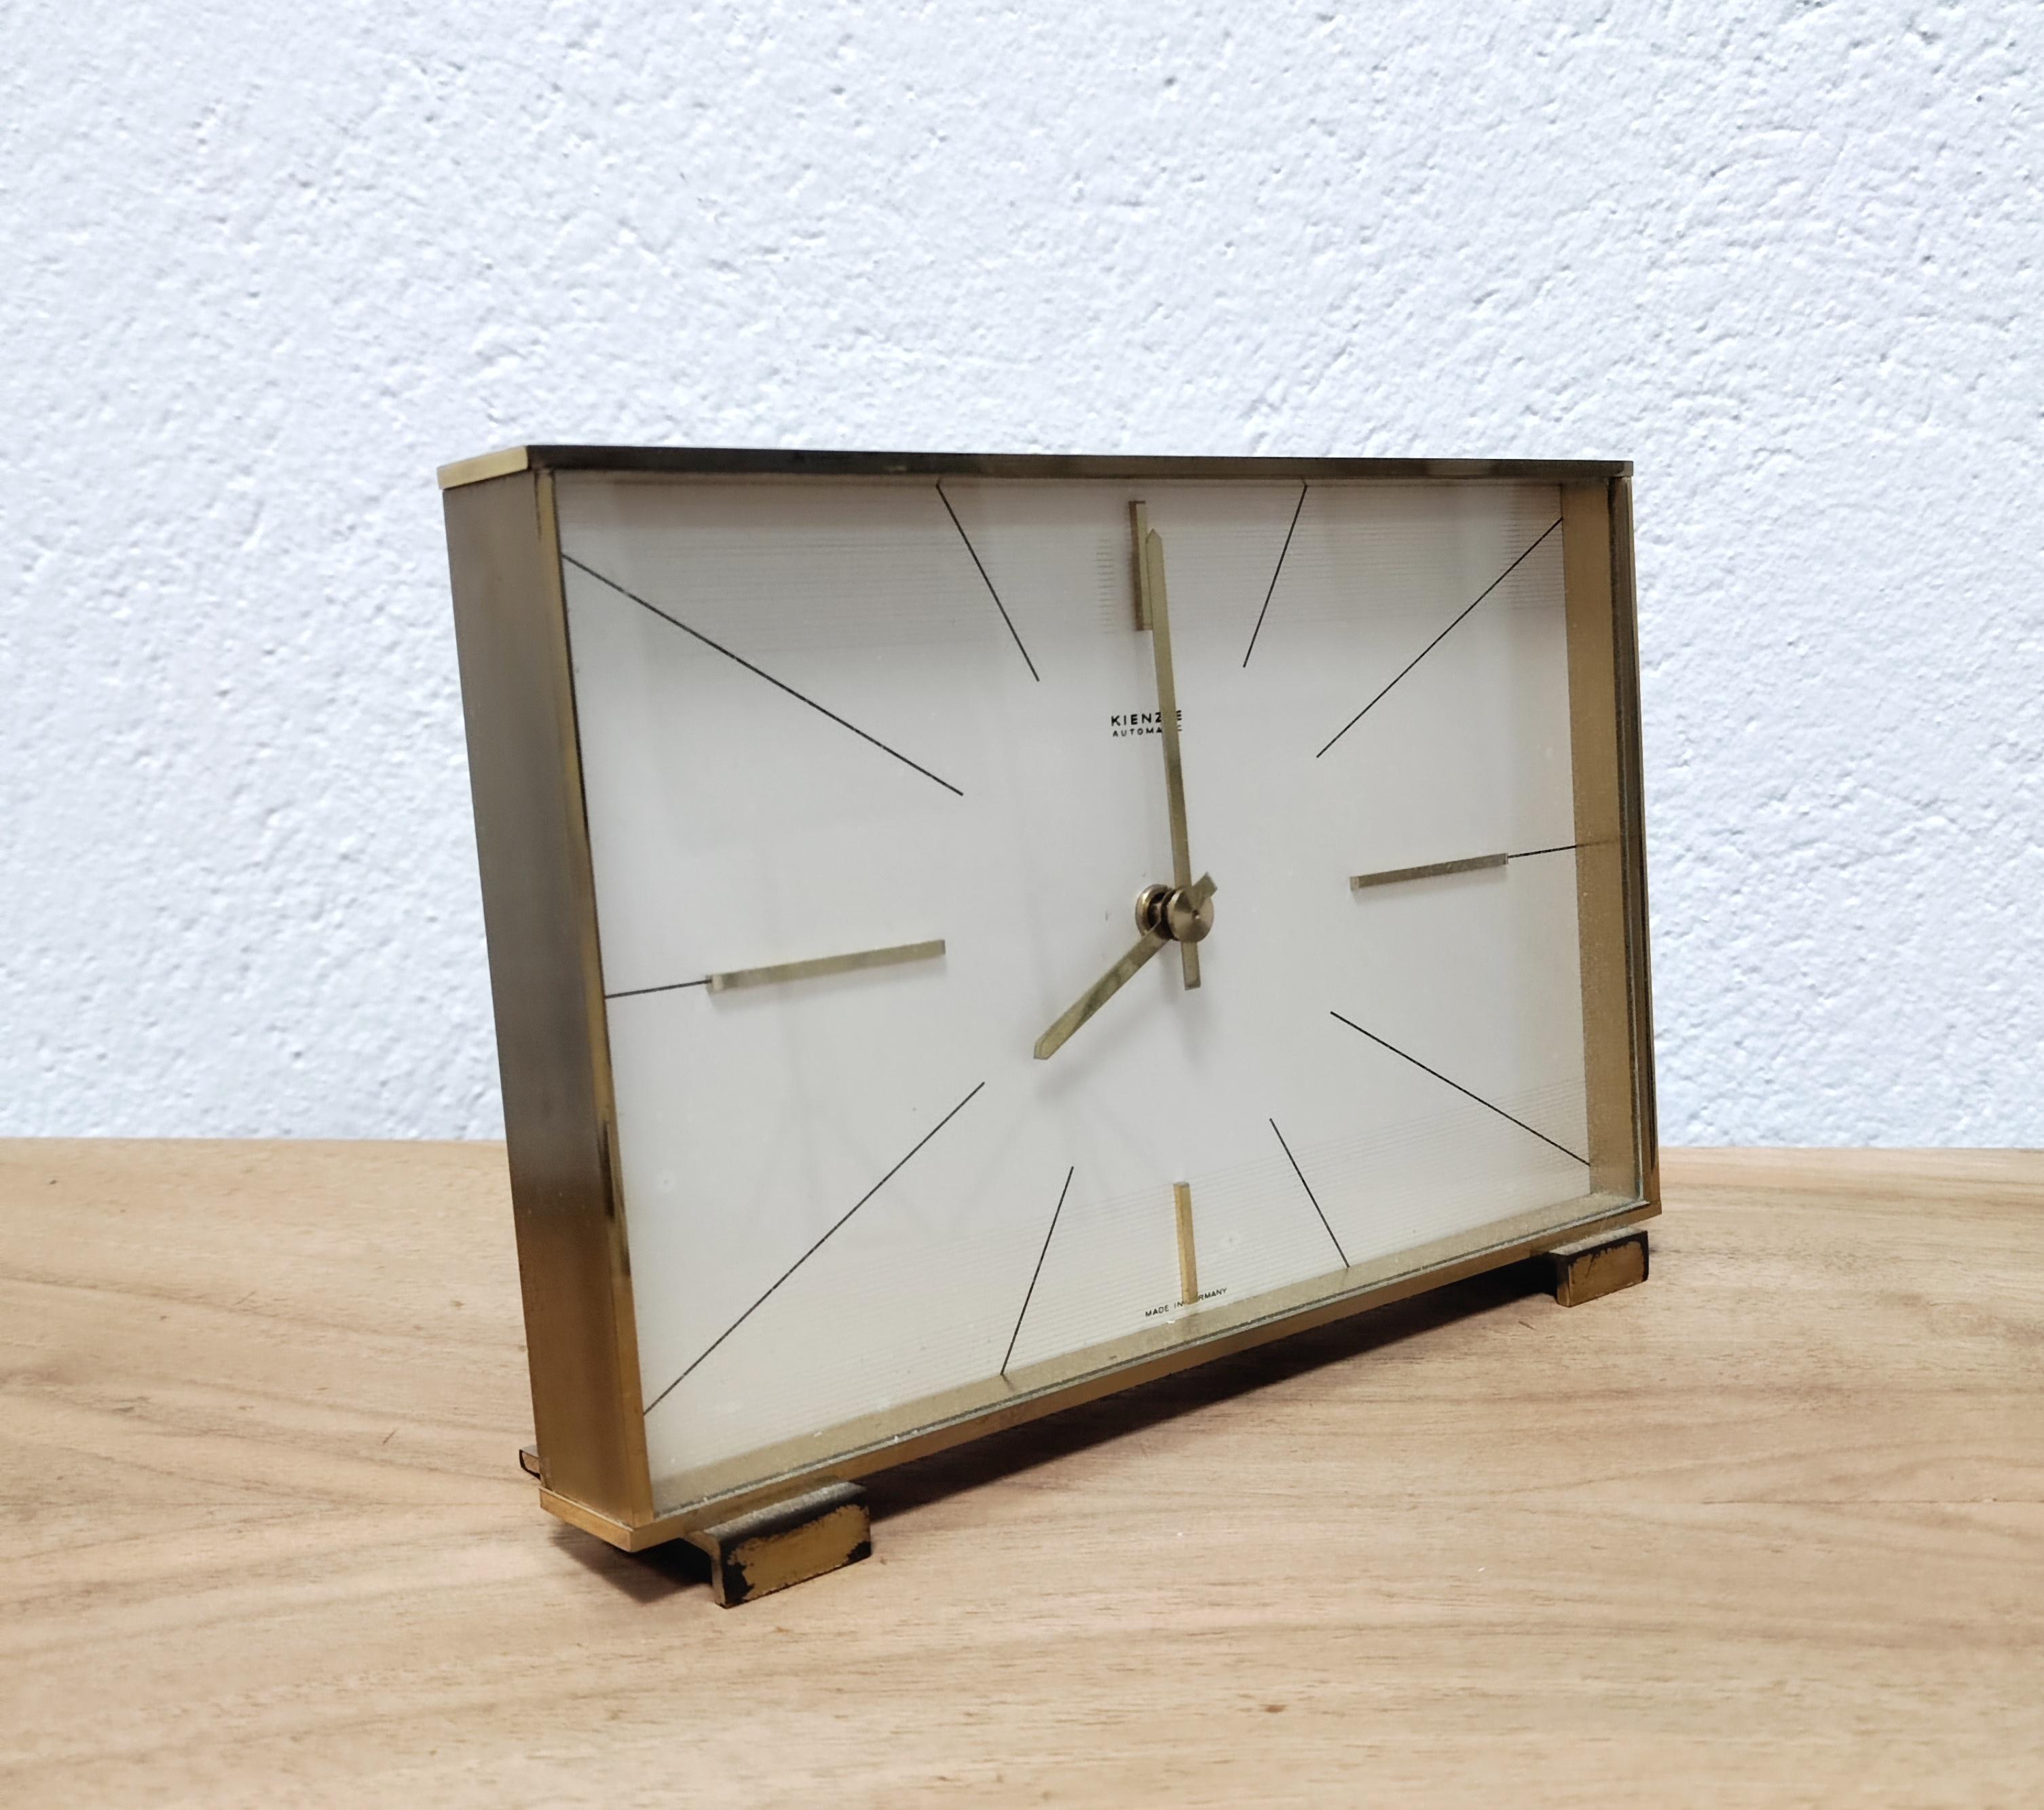 Dans cette liste vous trouverez une élégante horloge de table Hollywood Regency par Kienzle. Il est fabriqué en laiton massif, avec le verre de protection. Fonctionne sur piles. Fabriqué en Allemagne de l'Ouest dans les années 1960.

Si vous avez